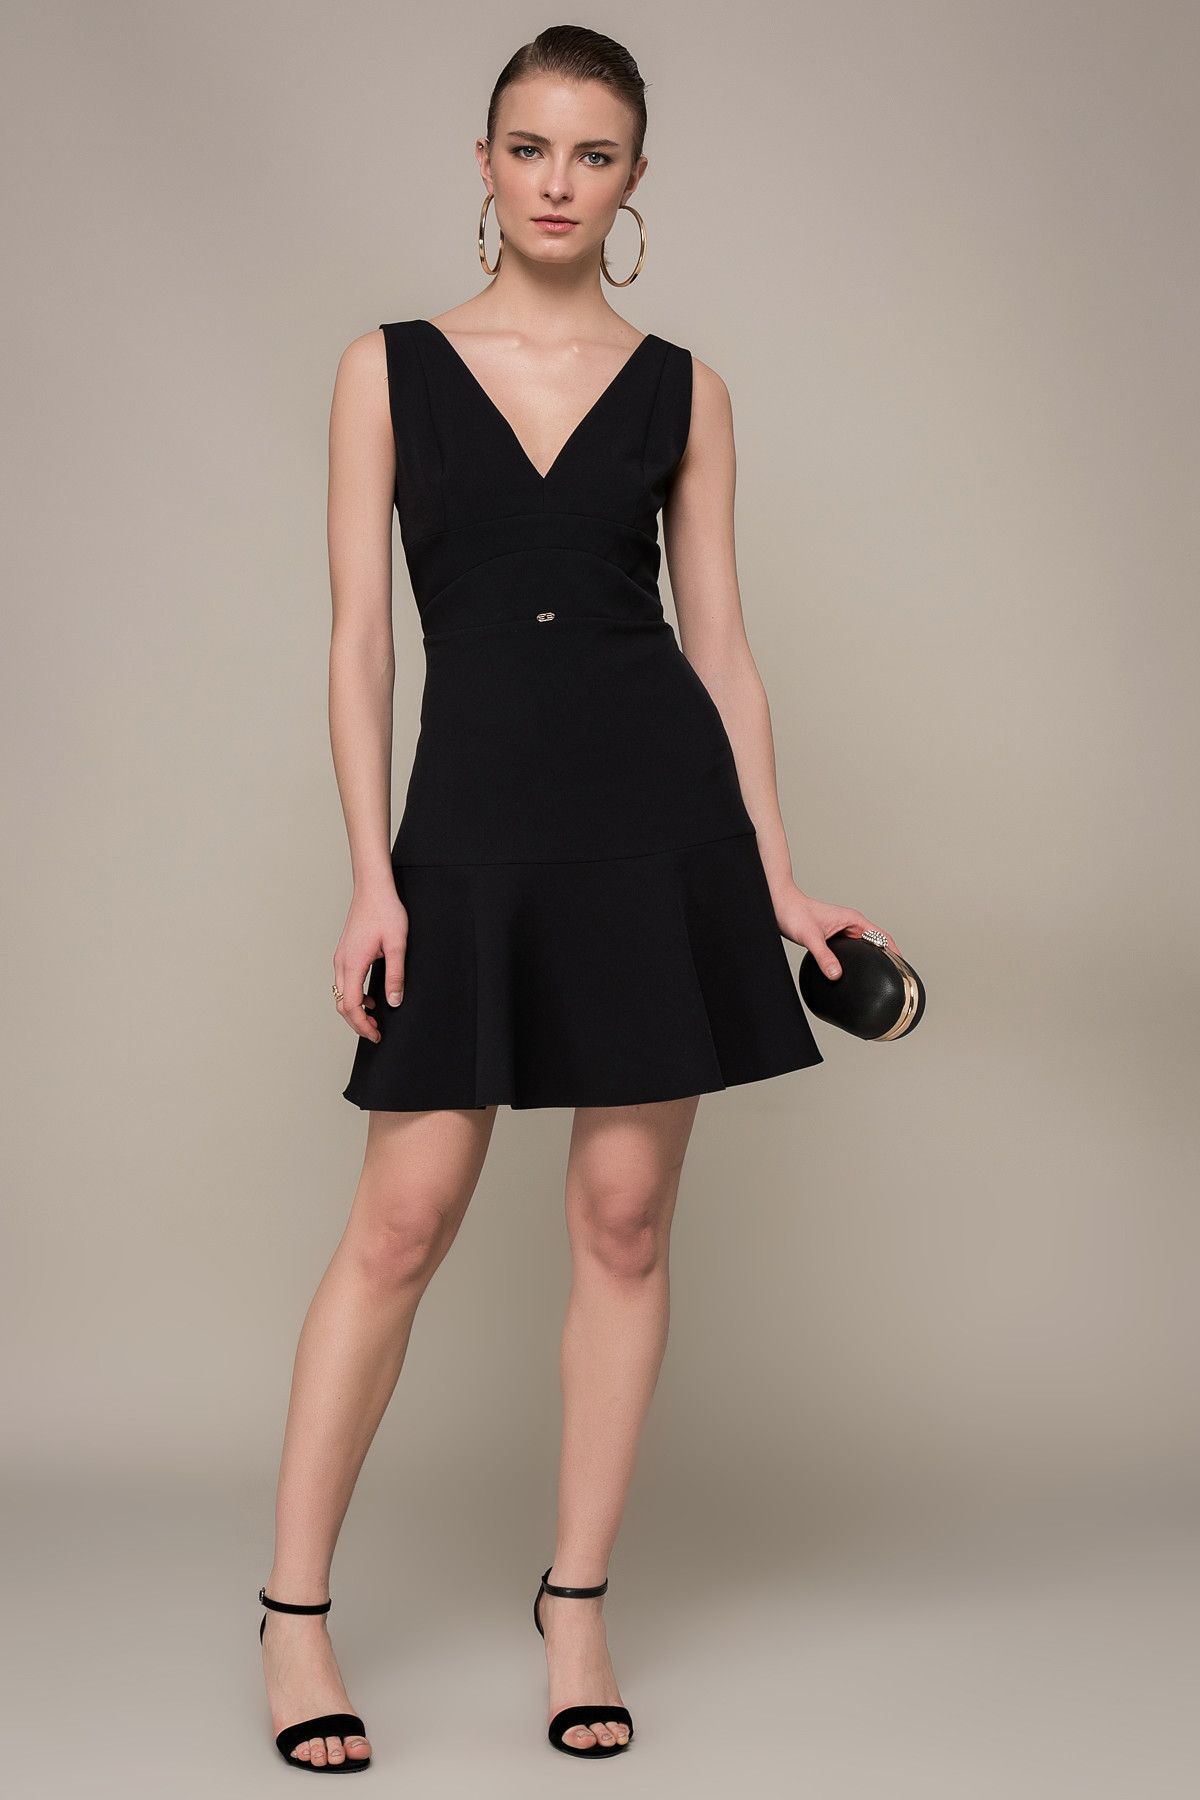 Y-London Kadın Siyah Etek Volanlı Elbise EX-52850